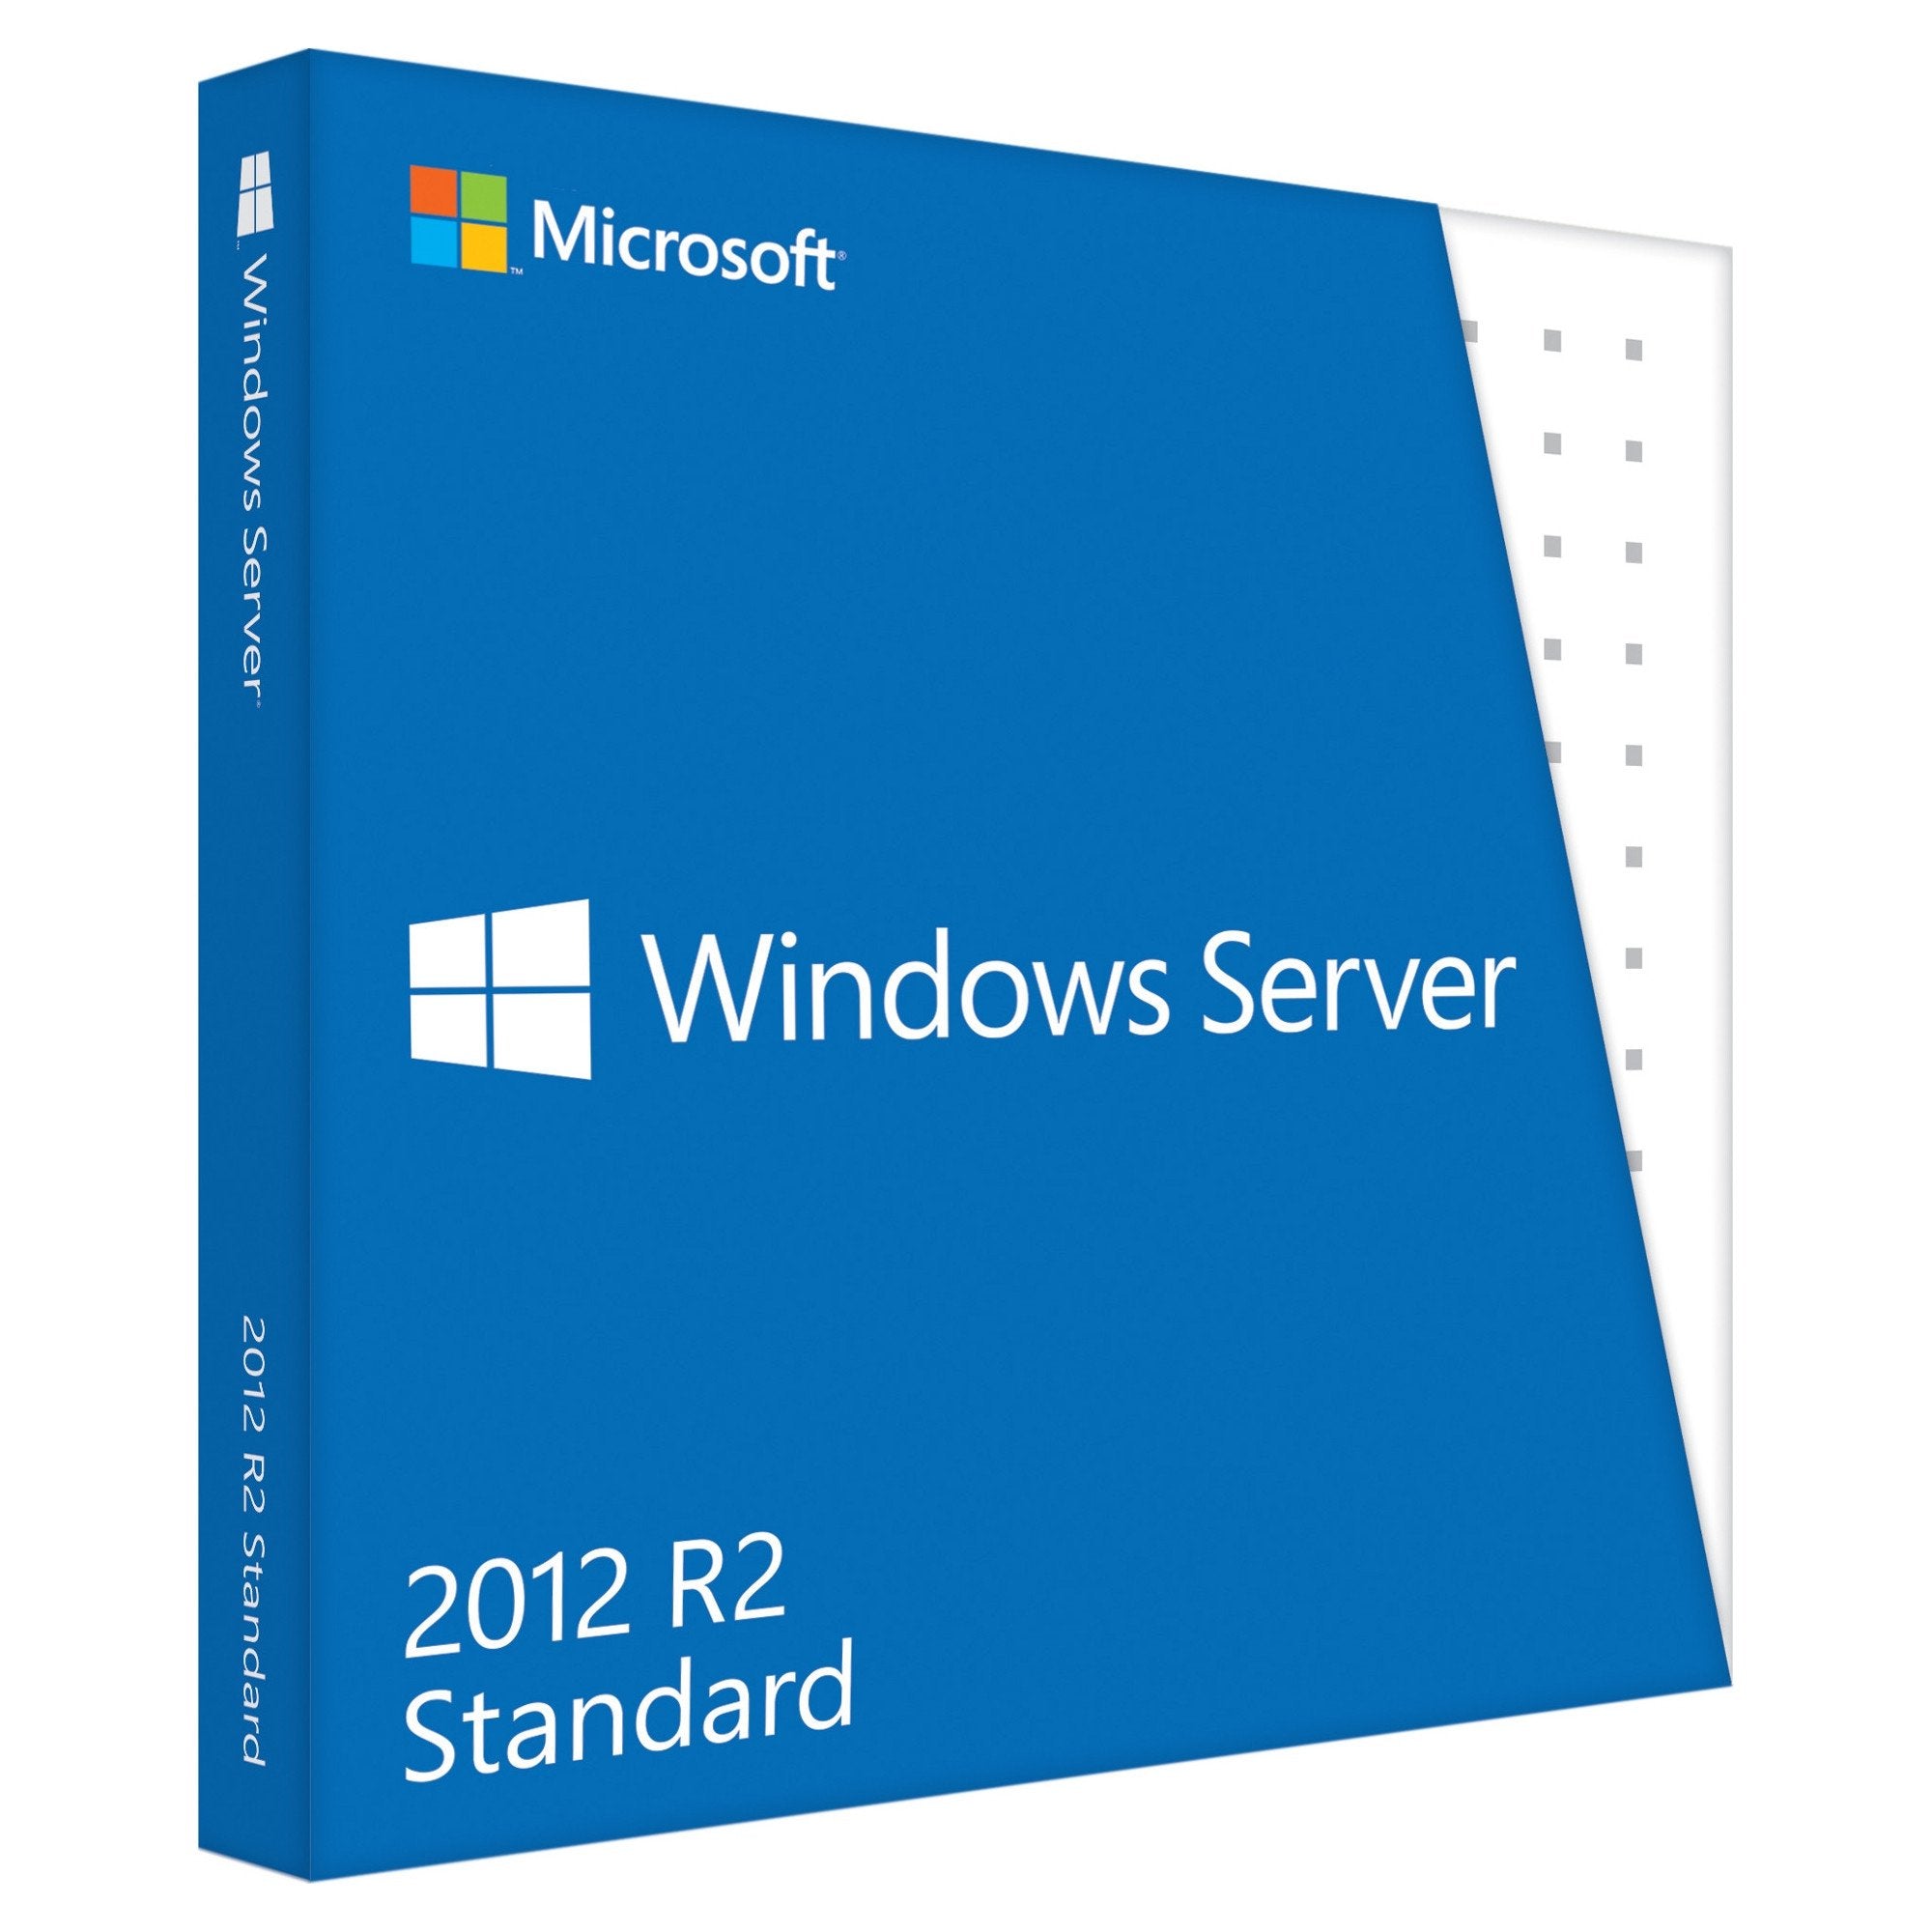 Microsoft Windows Server 2012 R2 10 Cals Mychoicesoftware Com